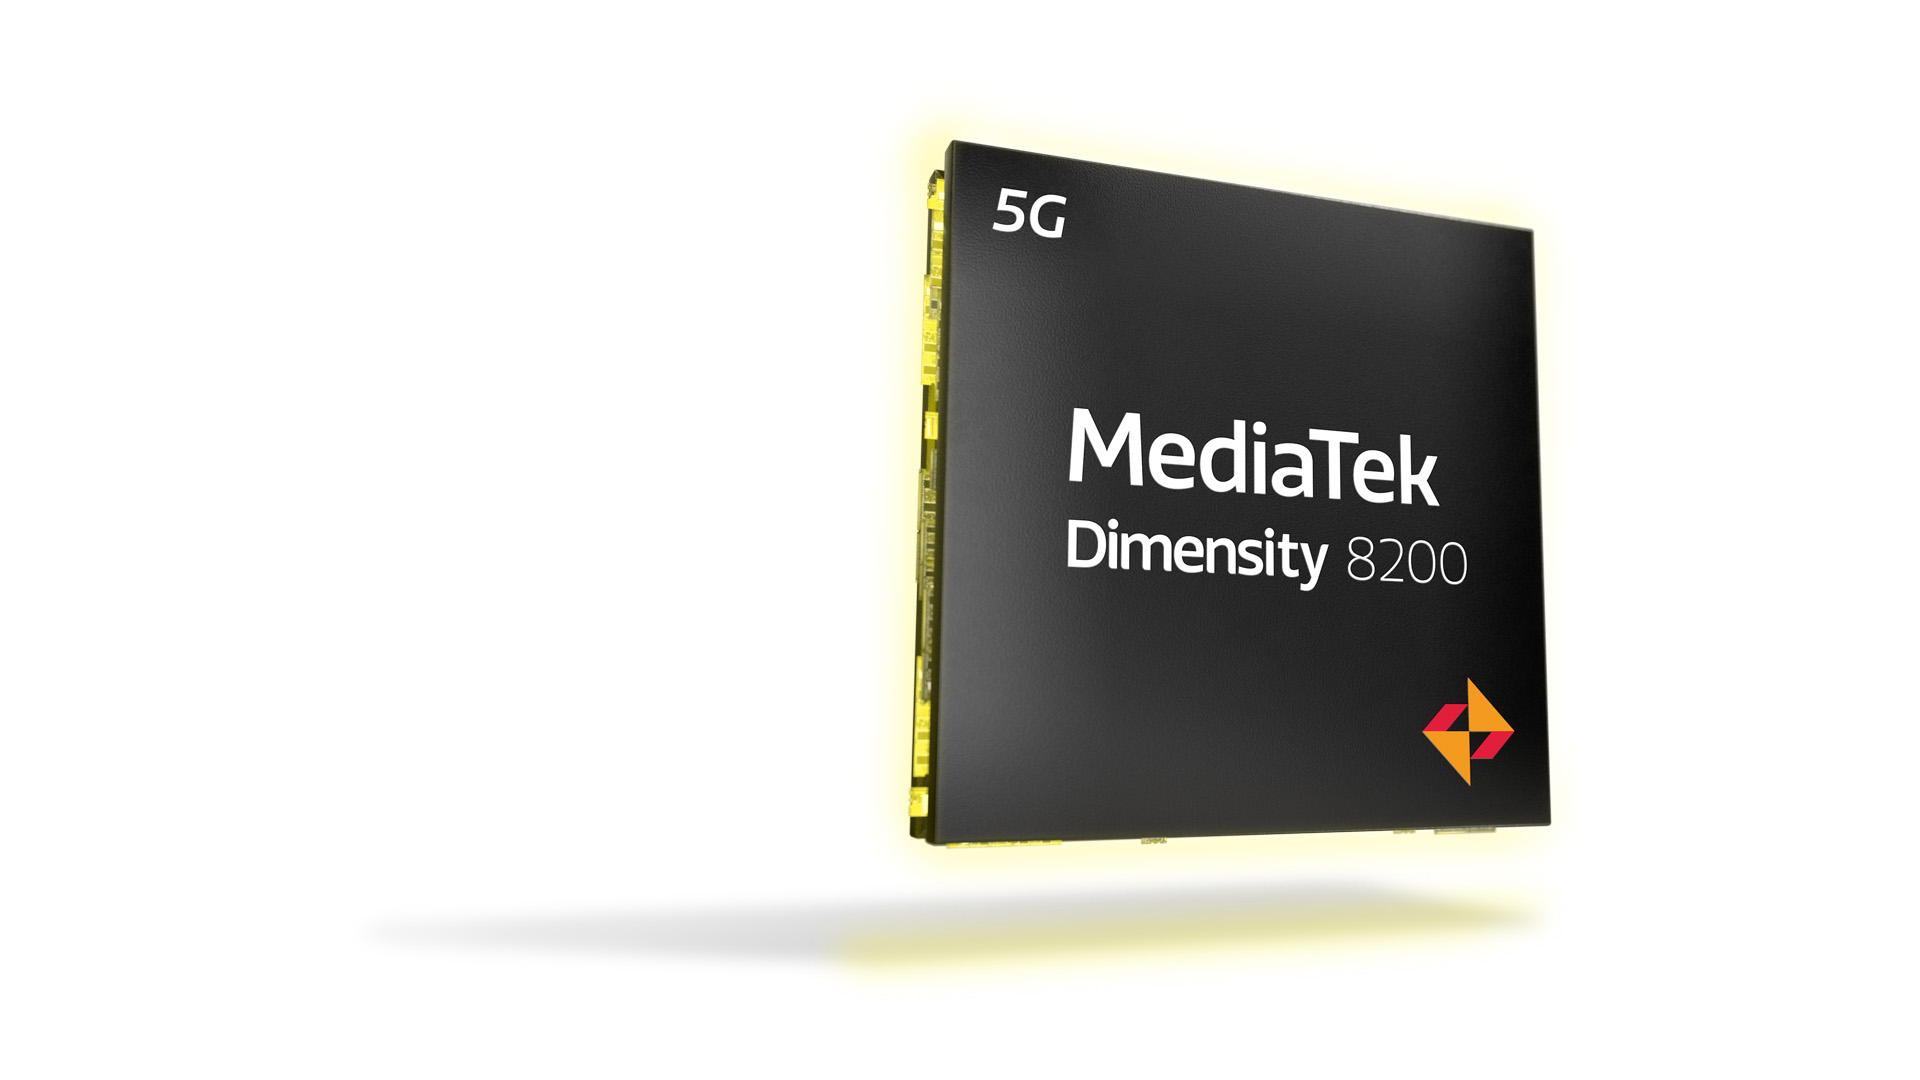 เปิดตัวแล้วชิป MediaTek Dimensity 8200 รุ่นใหม่พร้อมยกระดับประสบการณ์เกมมิ่งบนสมาร์ตโฟน 5G ระดับพรีเมี่ยม